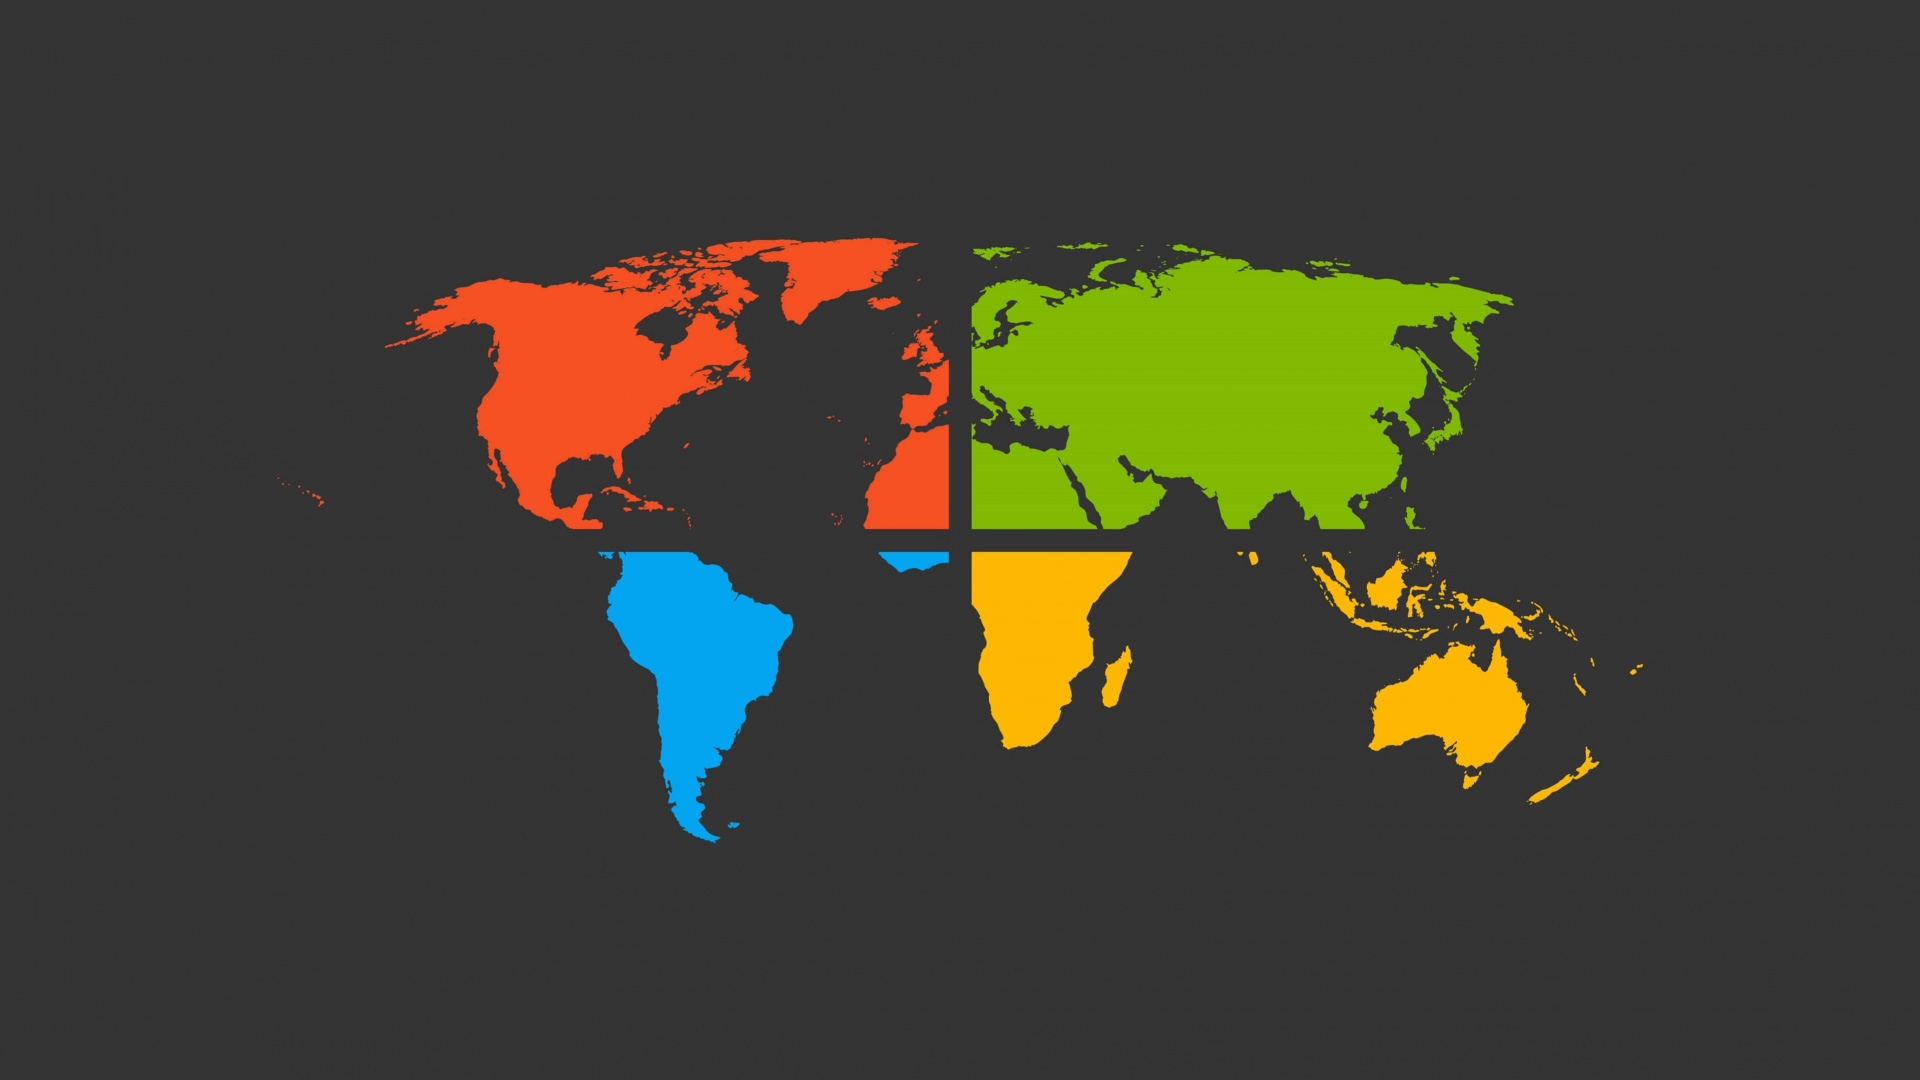 世界地图, 地球, 地图, 矢量图形, 色彩 壁纸 1920x1080 允许